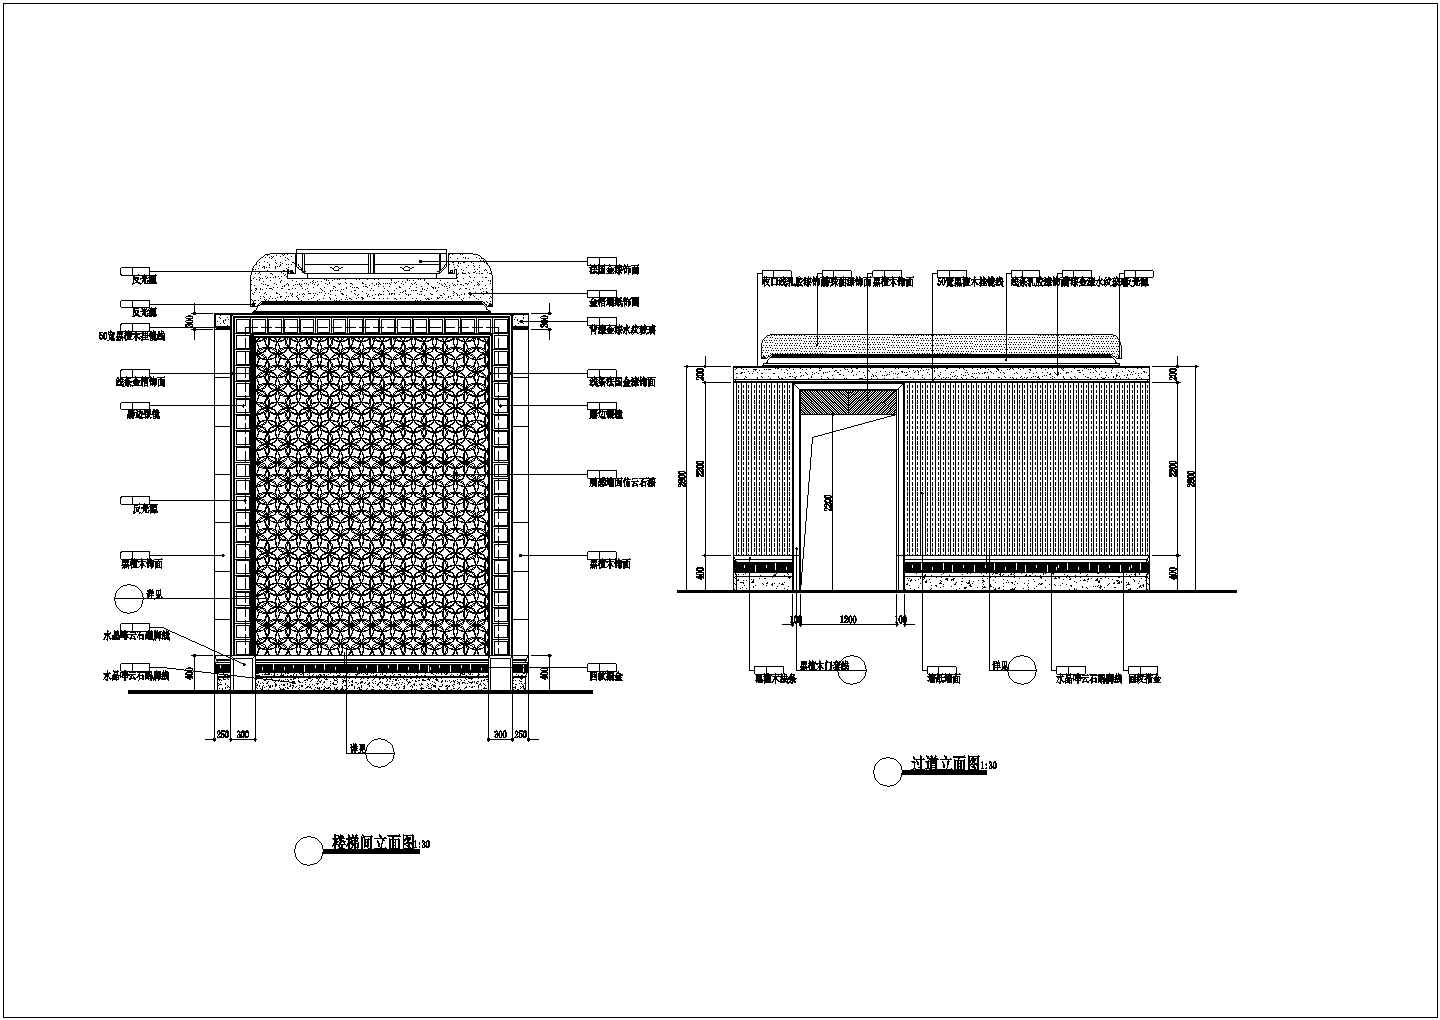 河南省某休闲洗浴中心装修施工方案图纸(含地下二层平面天棚图)